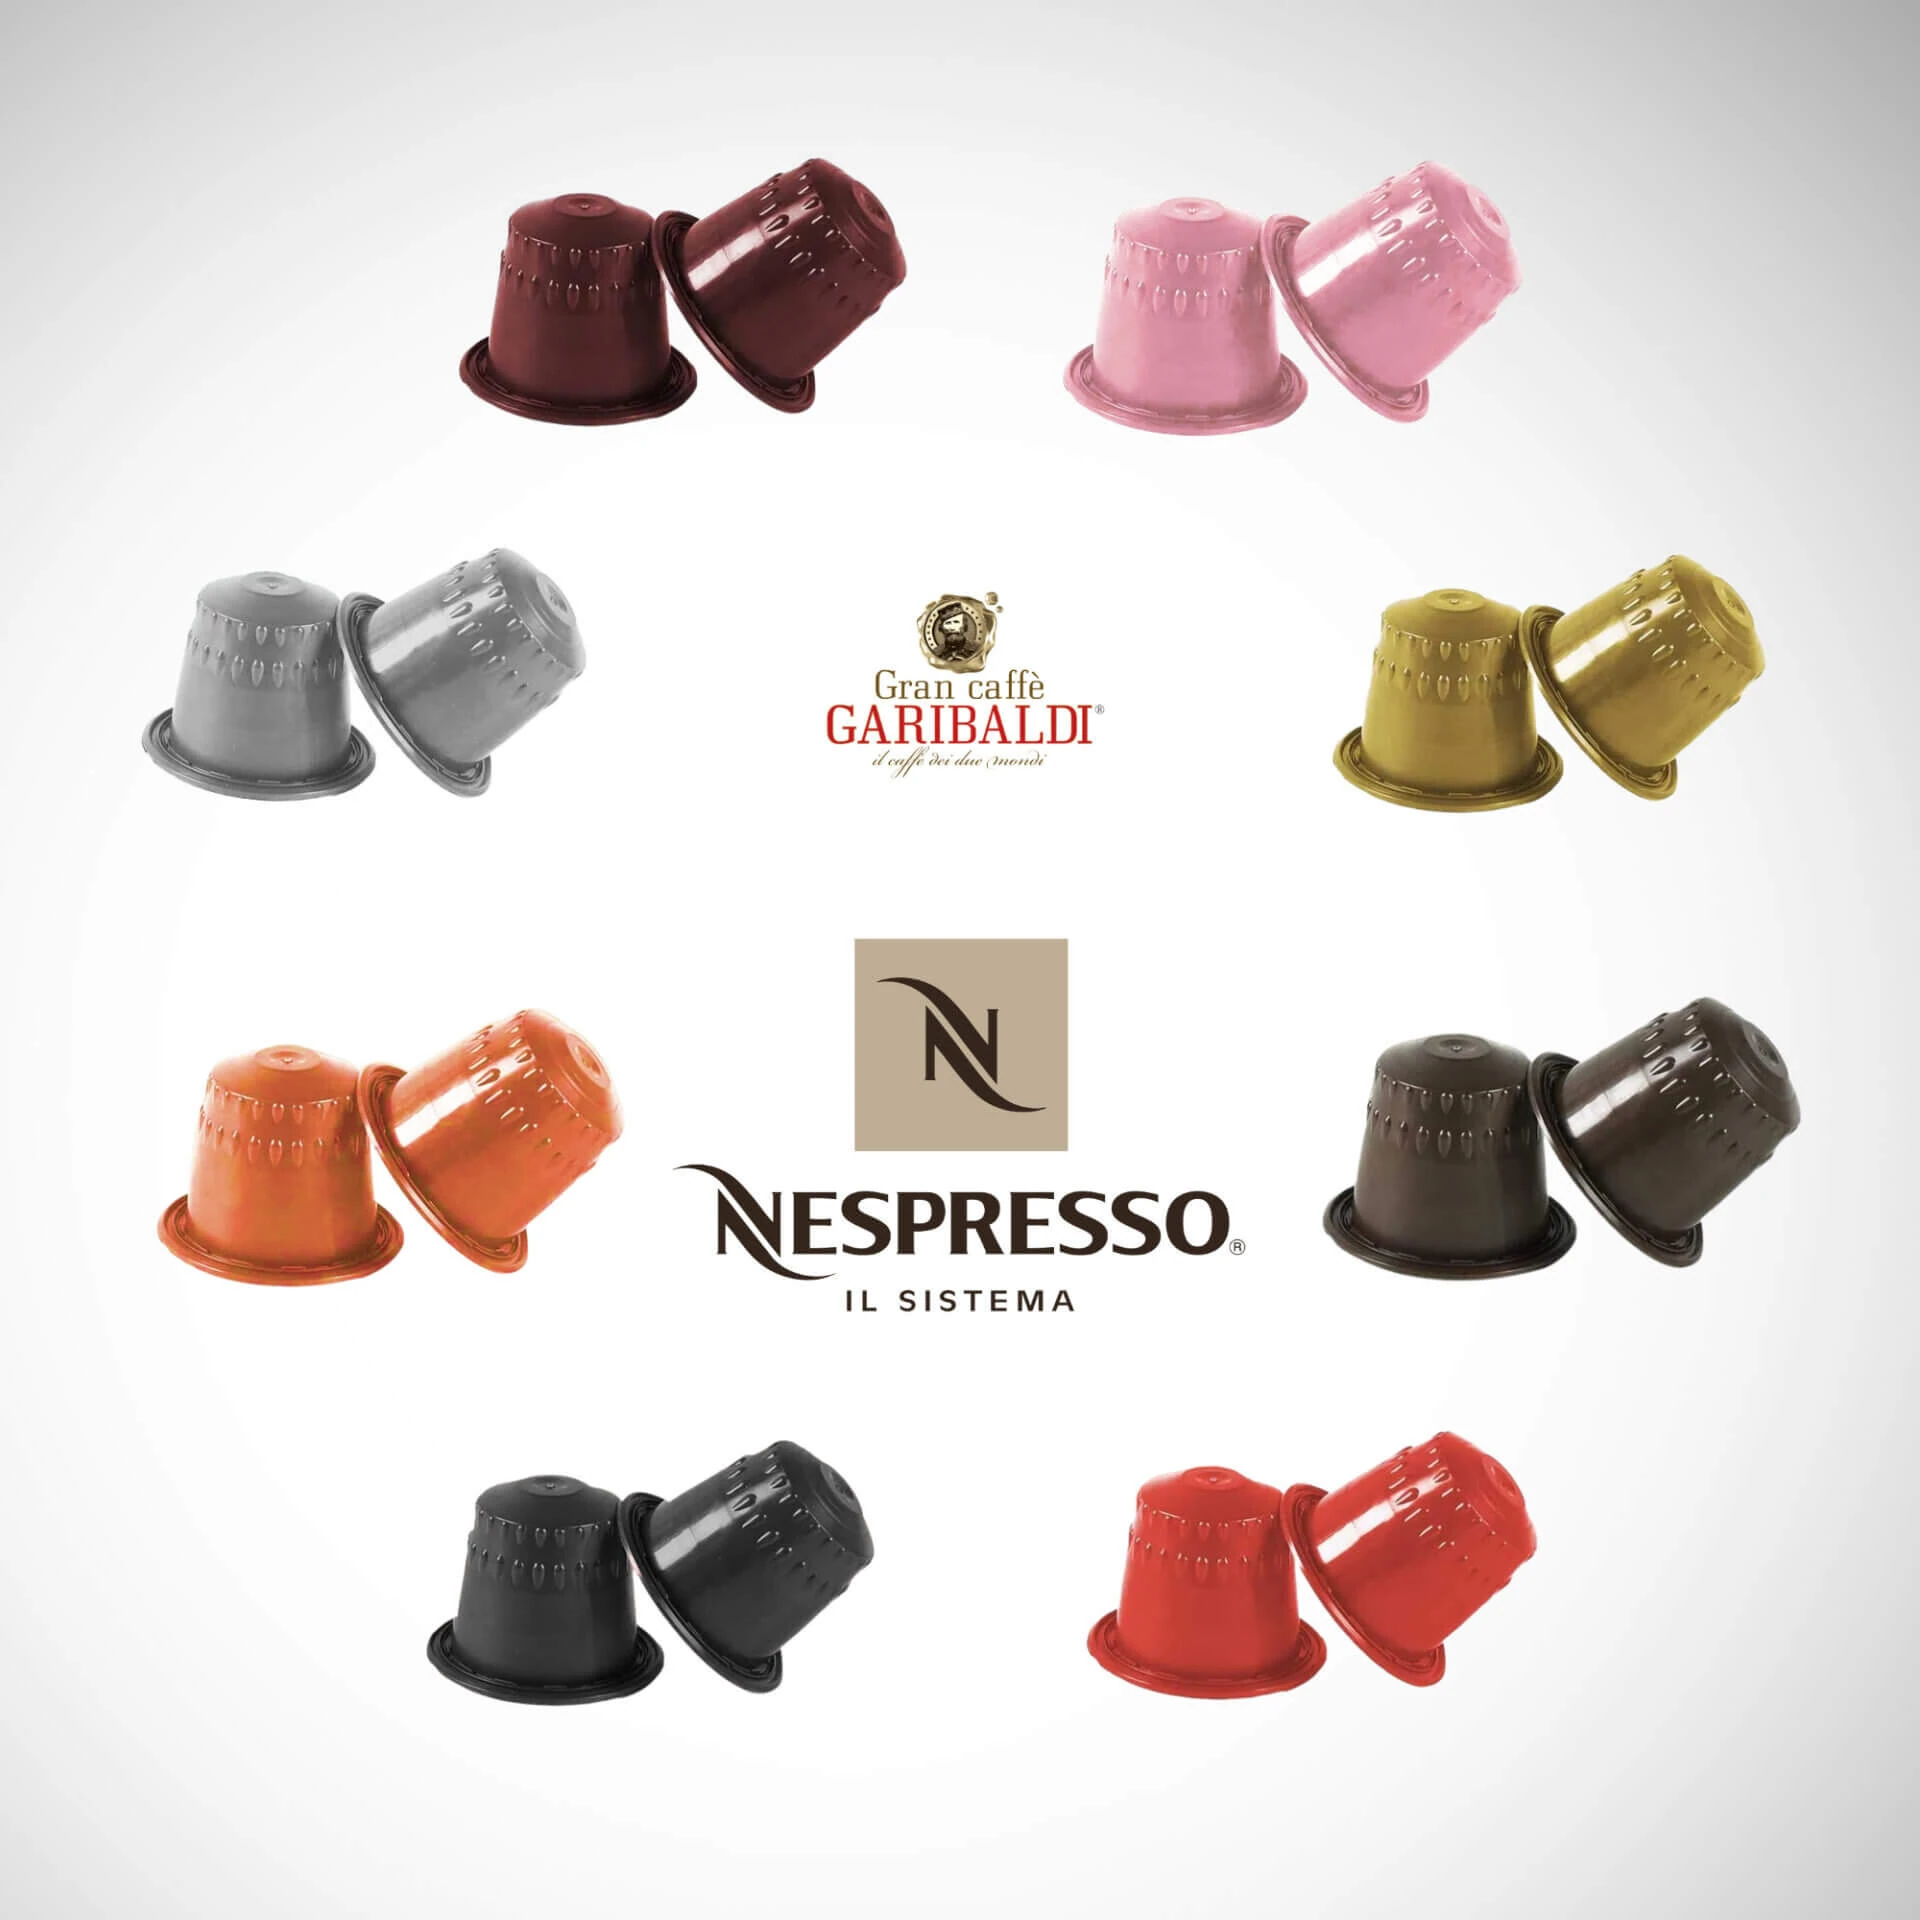 NESPRESSO Coffee Capsules GRAN CAFFE GARIBALDI Intenso, 10 pcs